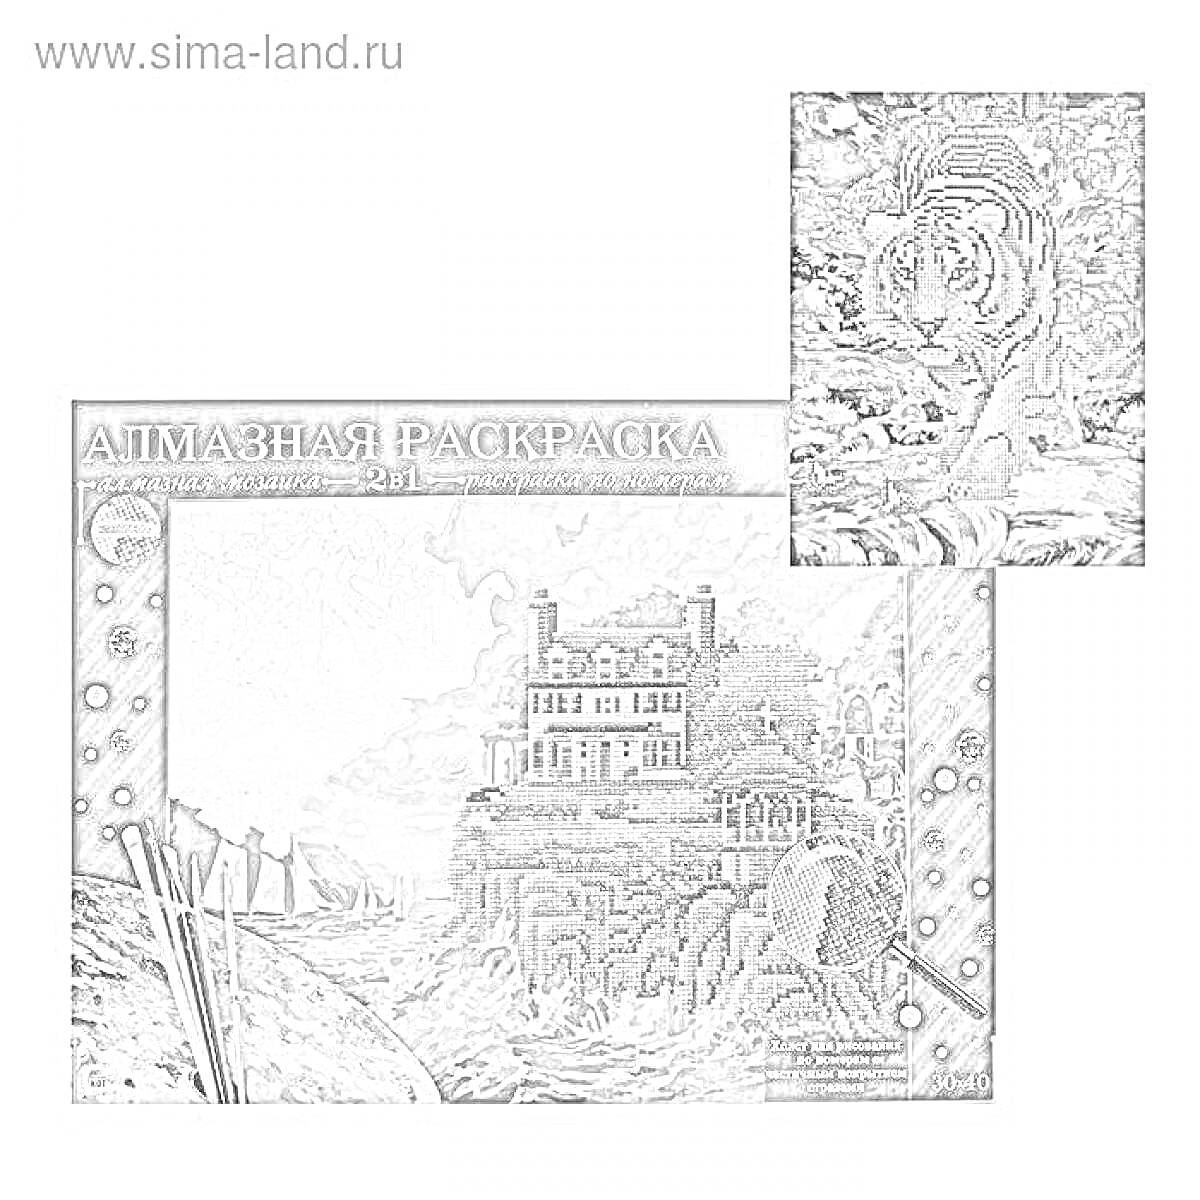 Раскраска Алмазная раскраска с домом у моря и тигром в лесу (представлены два изображения: дом у моря и тигр в лесу)